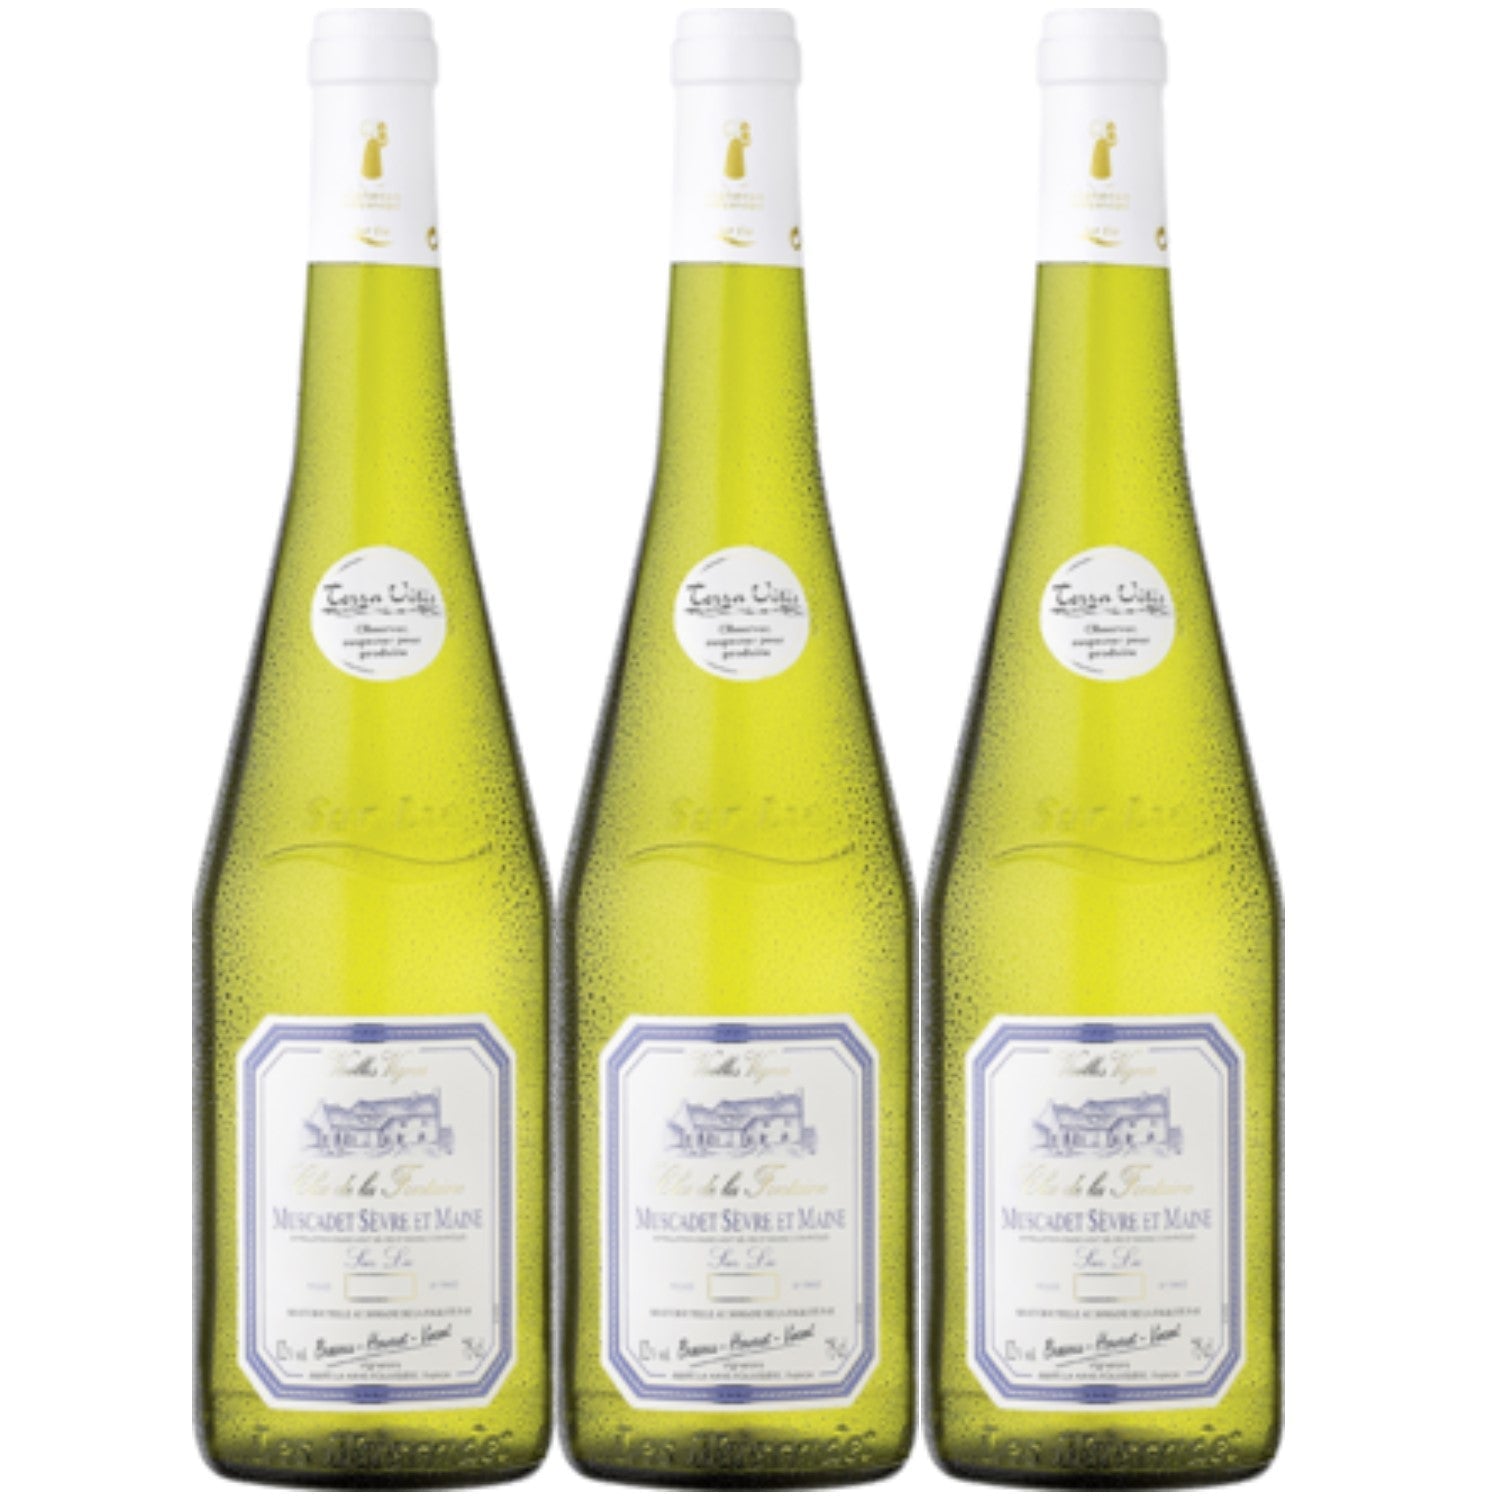 Clos de la Fontaine Muscadet Sèvre et Maine Sur Lie Weißwein vegan trocken AOC Frankreich (3 x 0,75l) - Versanel -